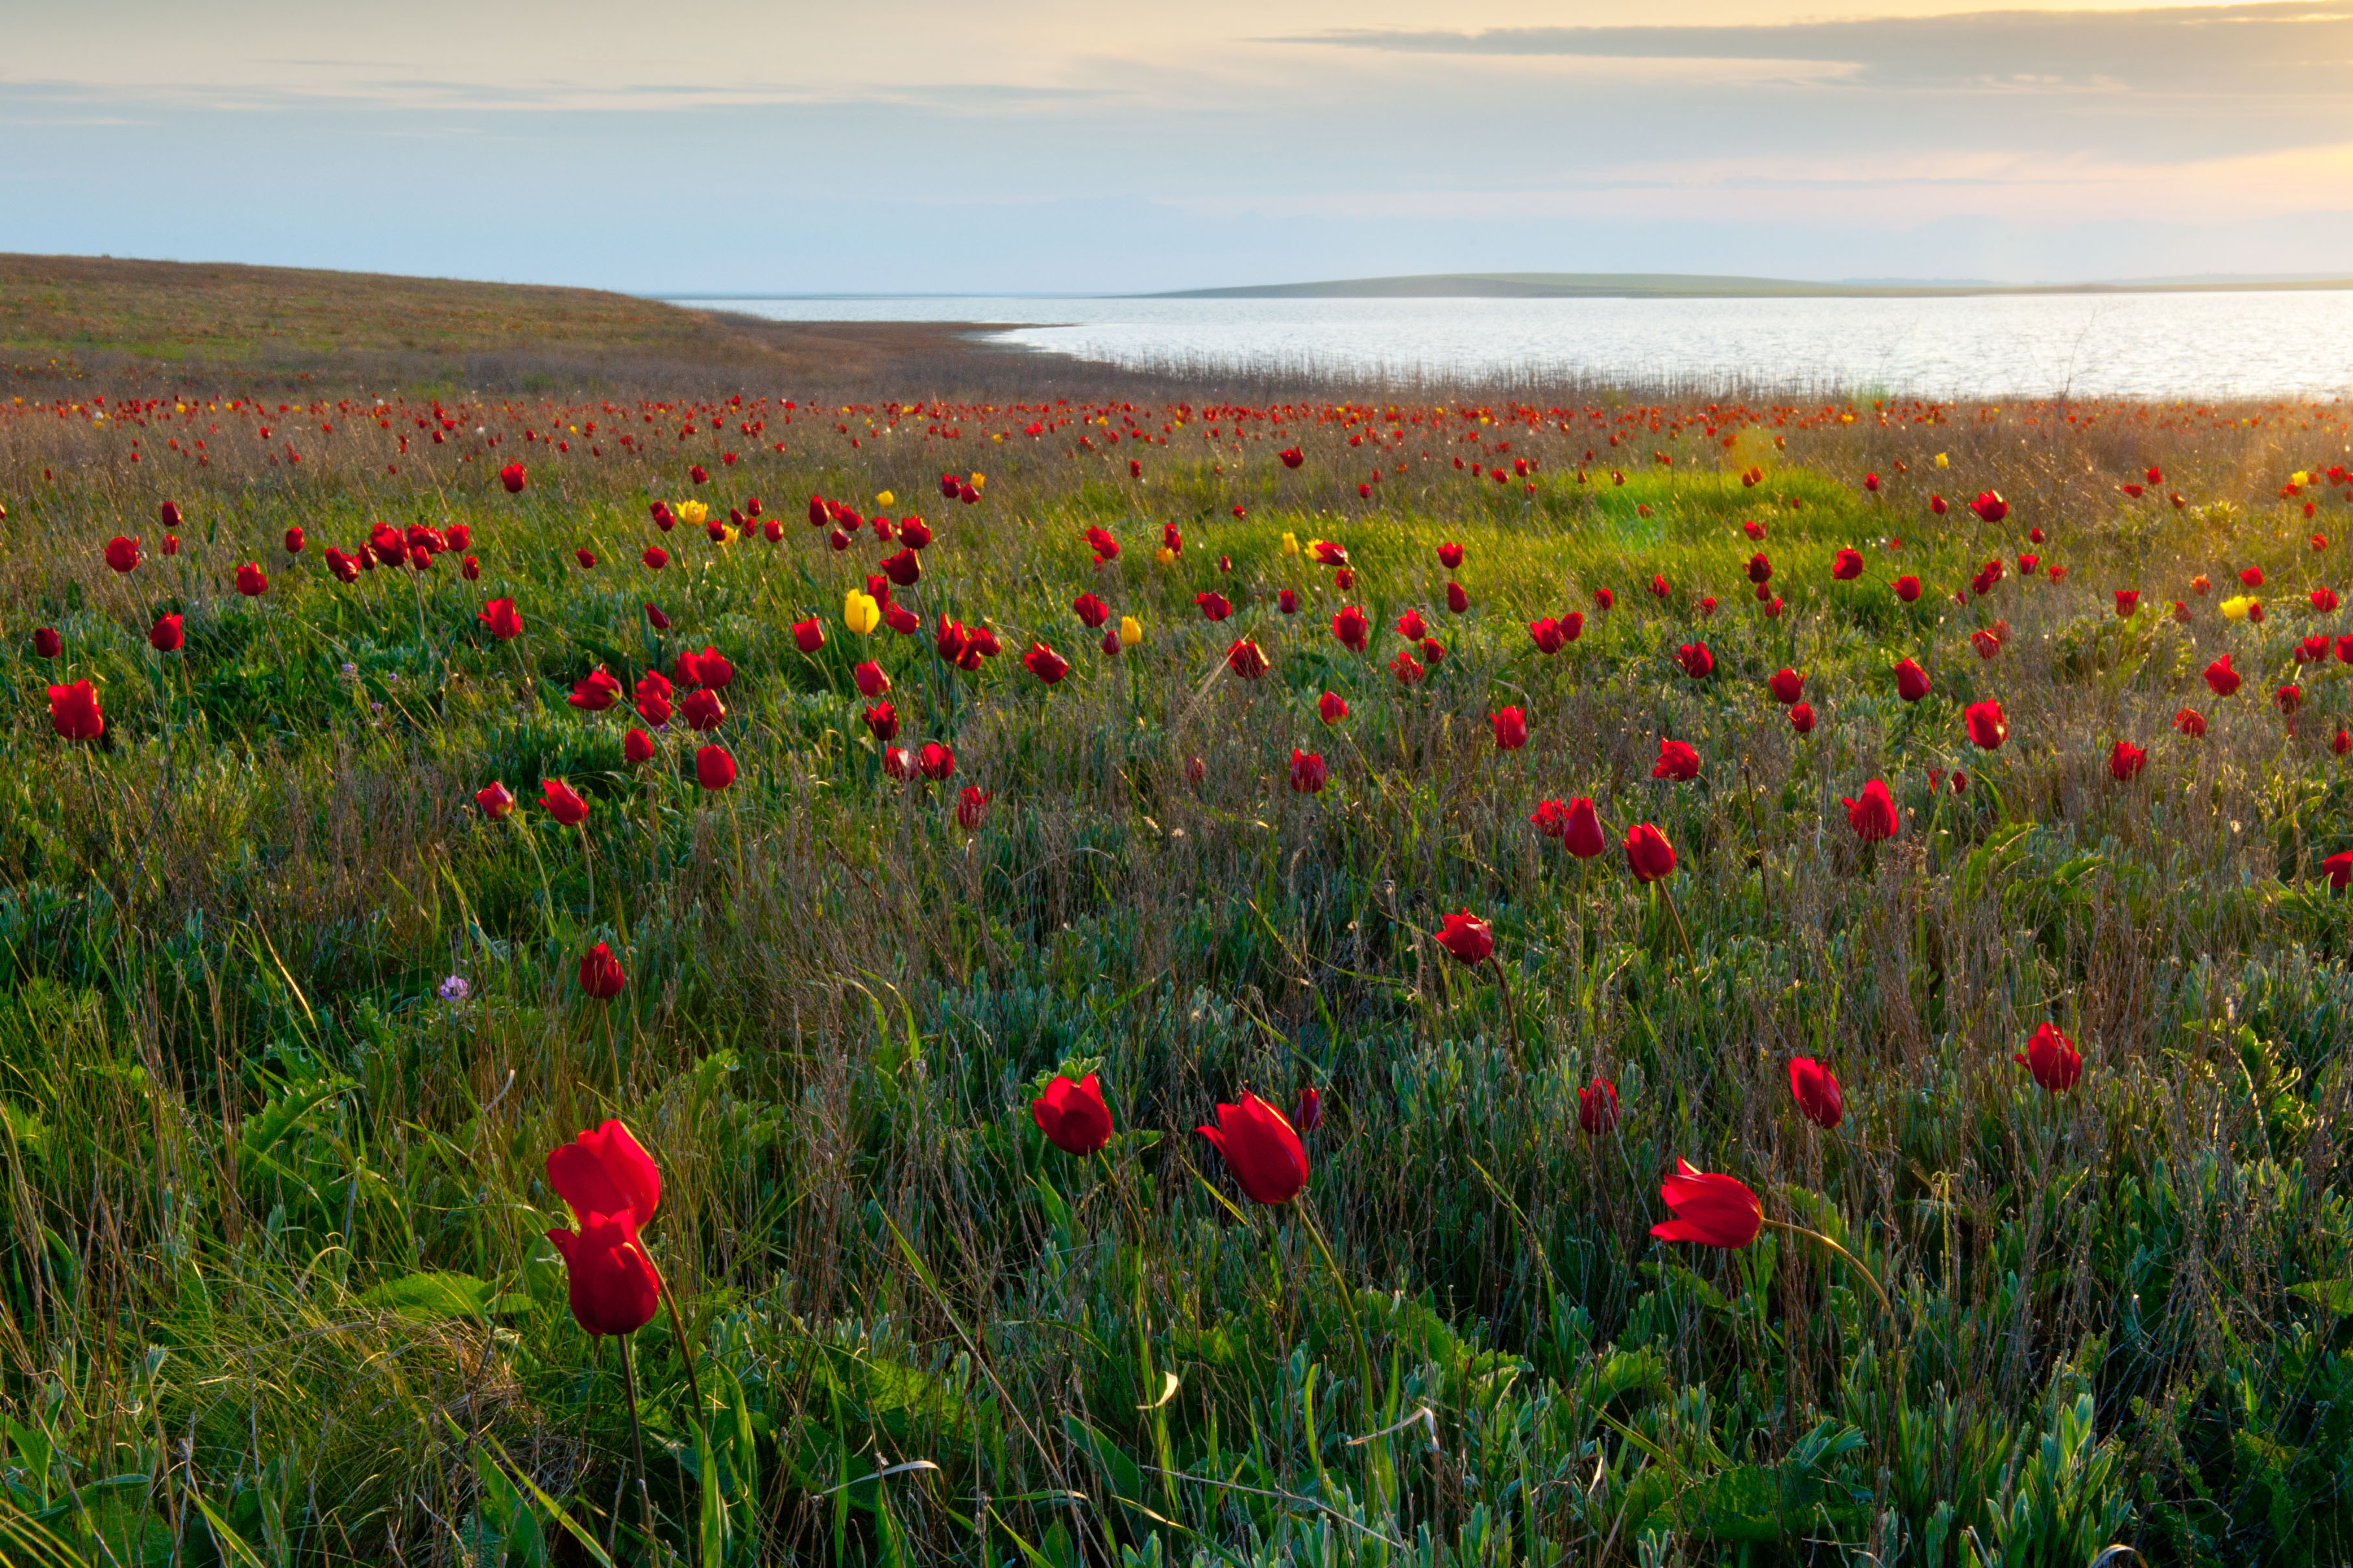 Tulipan so vir ponosa prebivalcev Kalmikije. Po vsej deželi lahko vidimo velika polja rož in celo njihov narodni ples spominja na tulipane, ki se zibljejo v vetru.